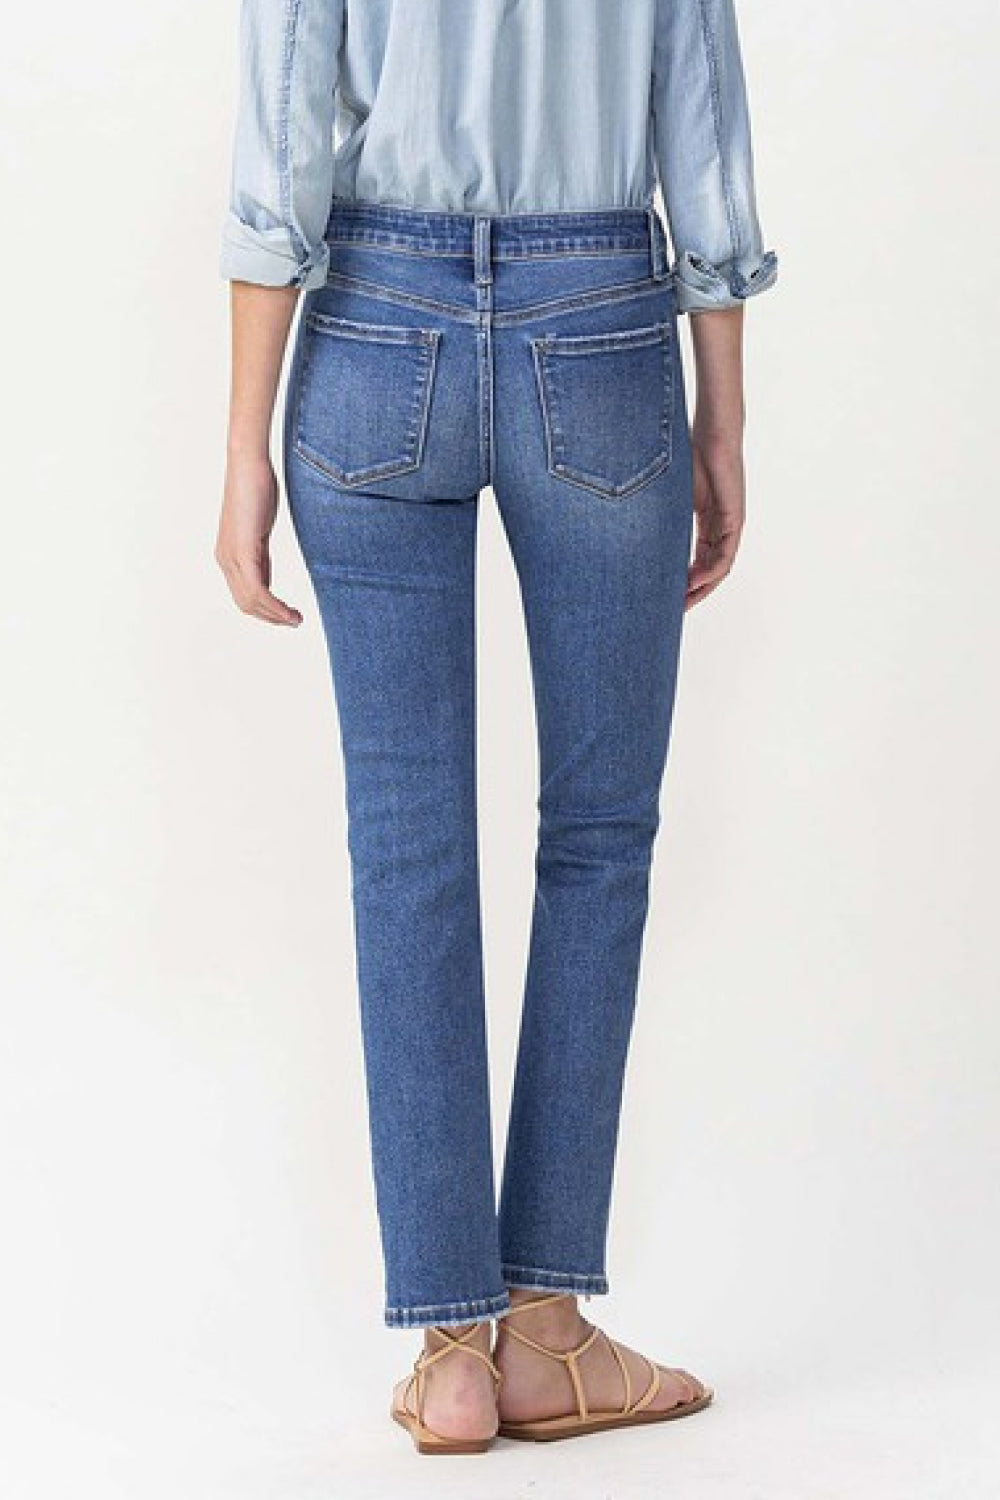 LOVERVET by Vervet Full Size Maggie Midrise Slim Ankle Straight Jeans